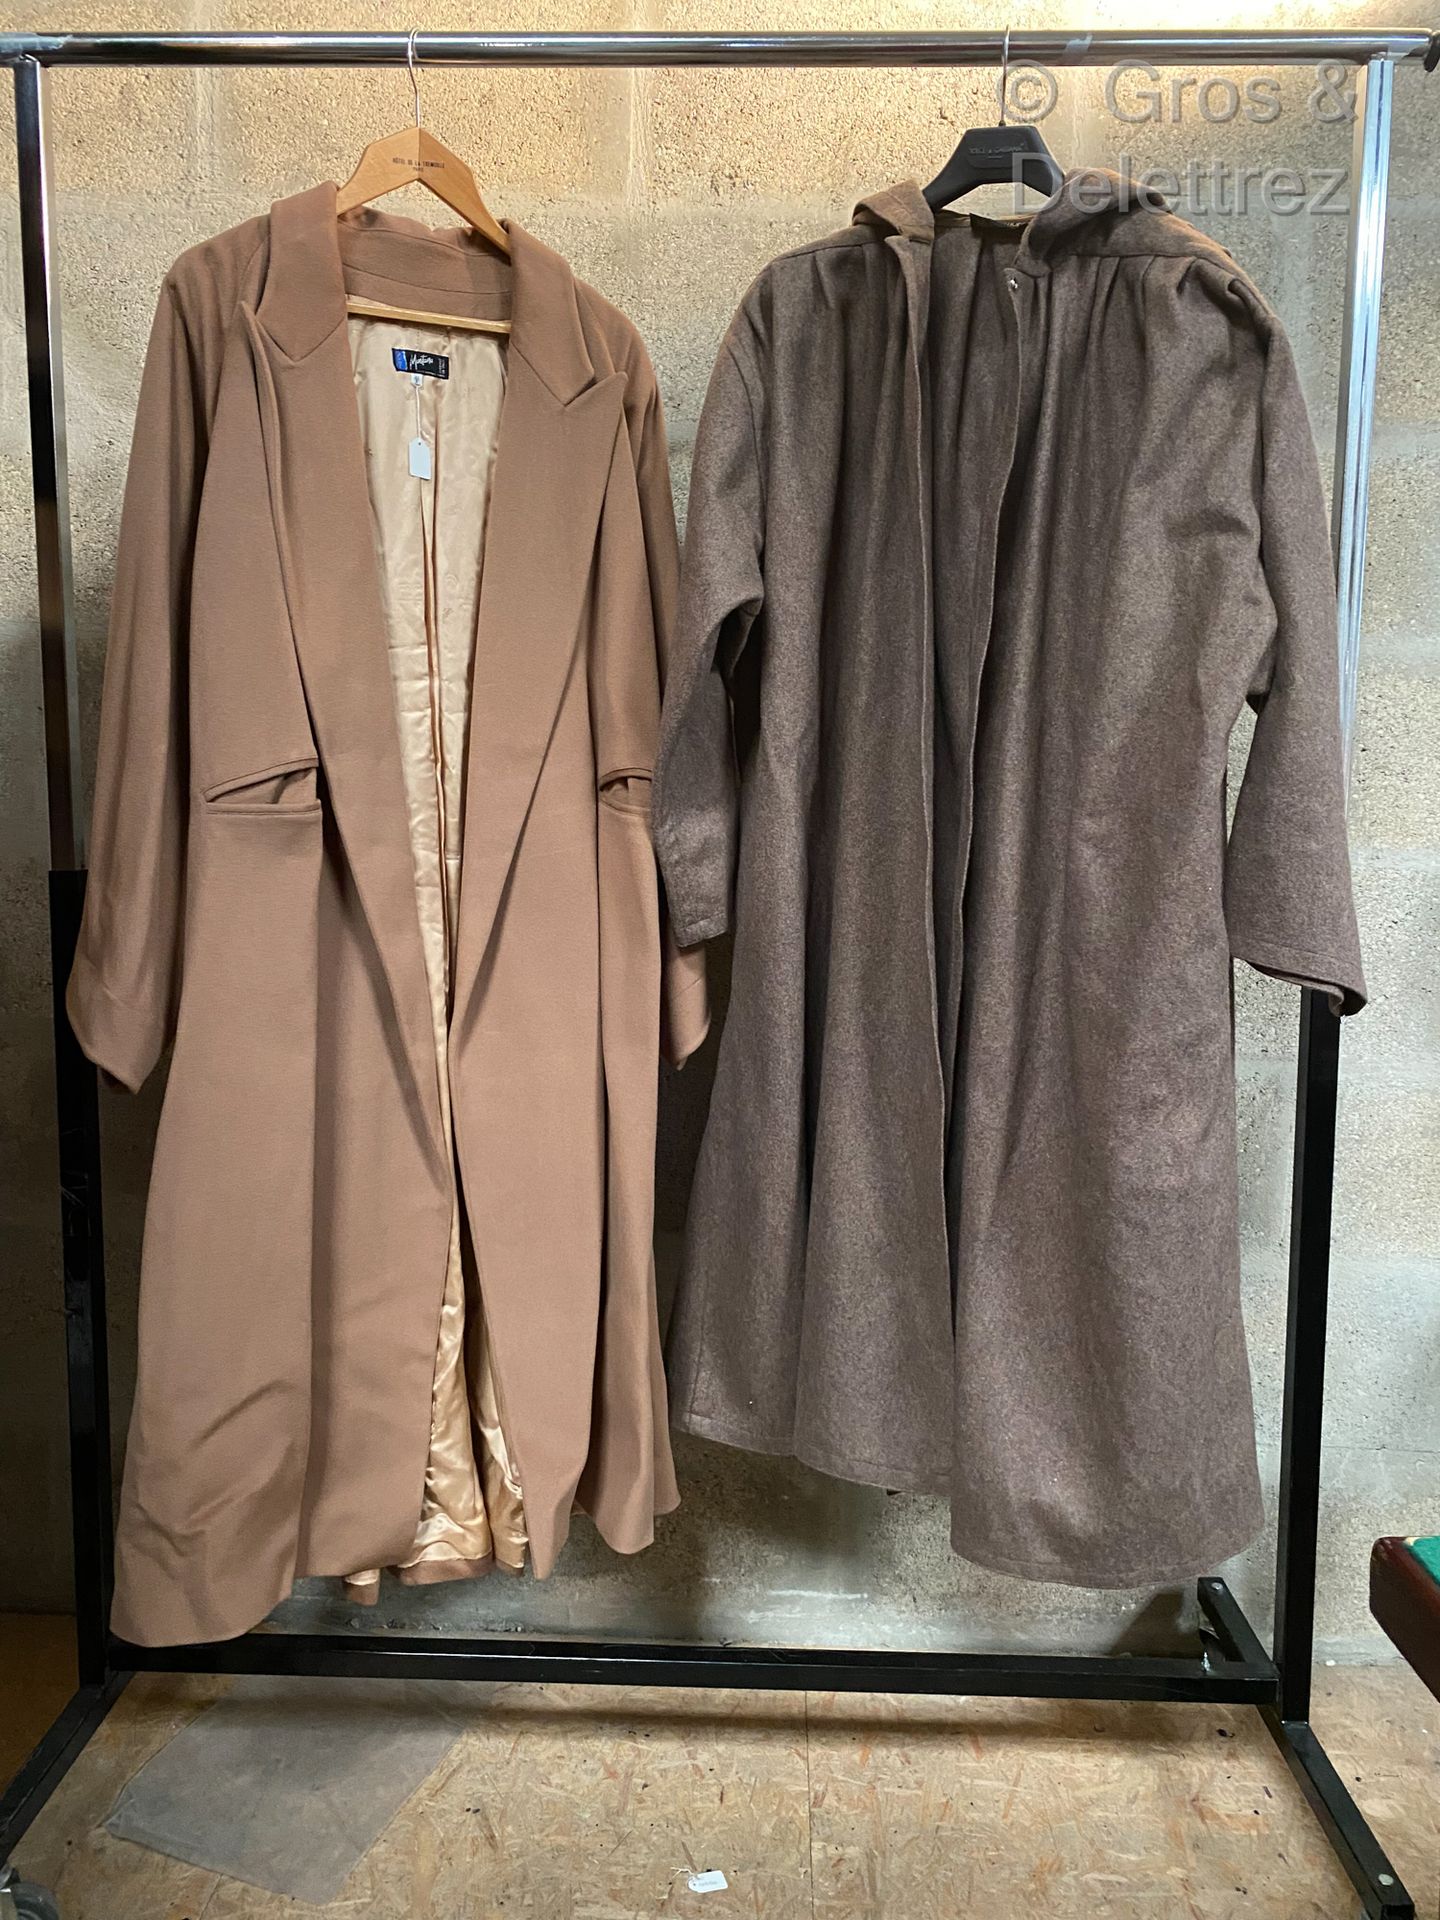 Null CLAUDE MONTANA for FERRER Y SENTIS 拍品包括一件驼色羊毛和羊绒大衣，以及一件大型灰褐色羊毛大衣披肩